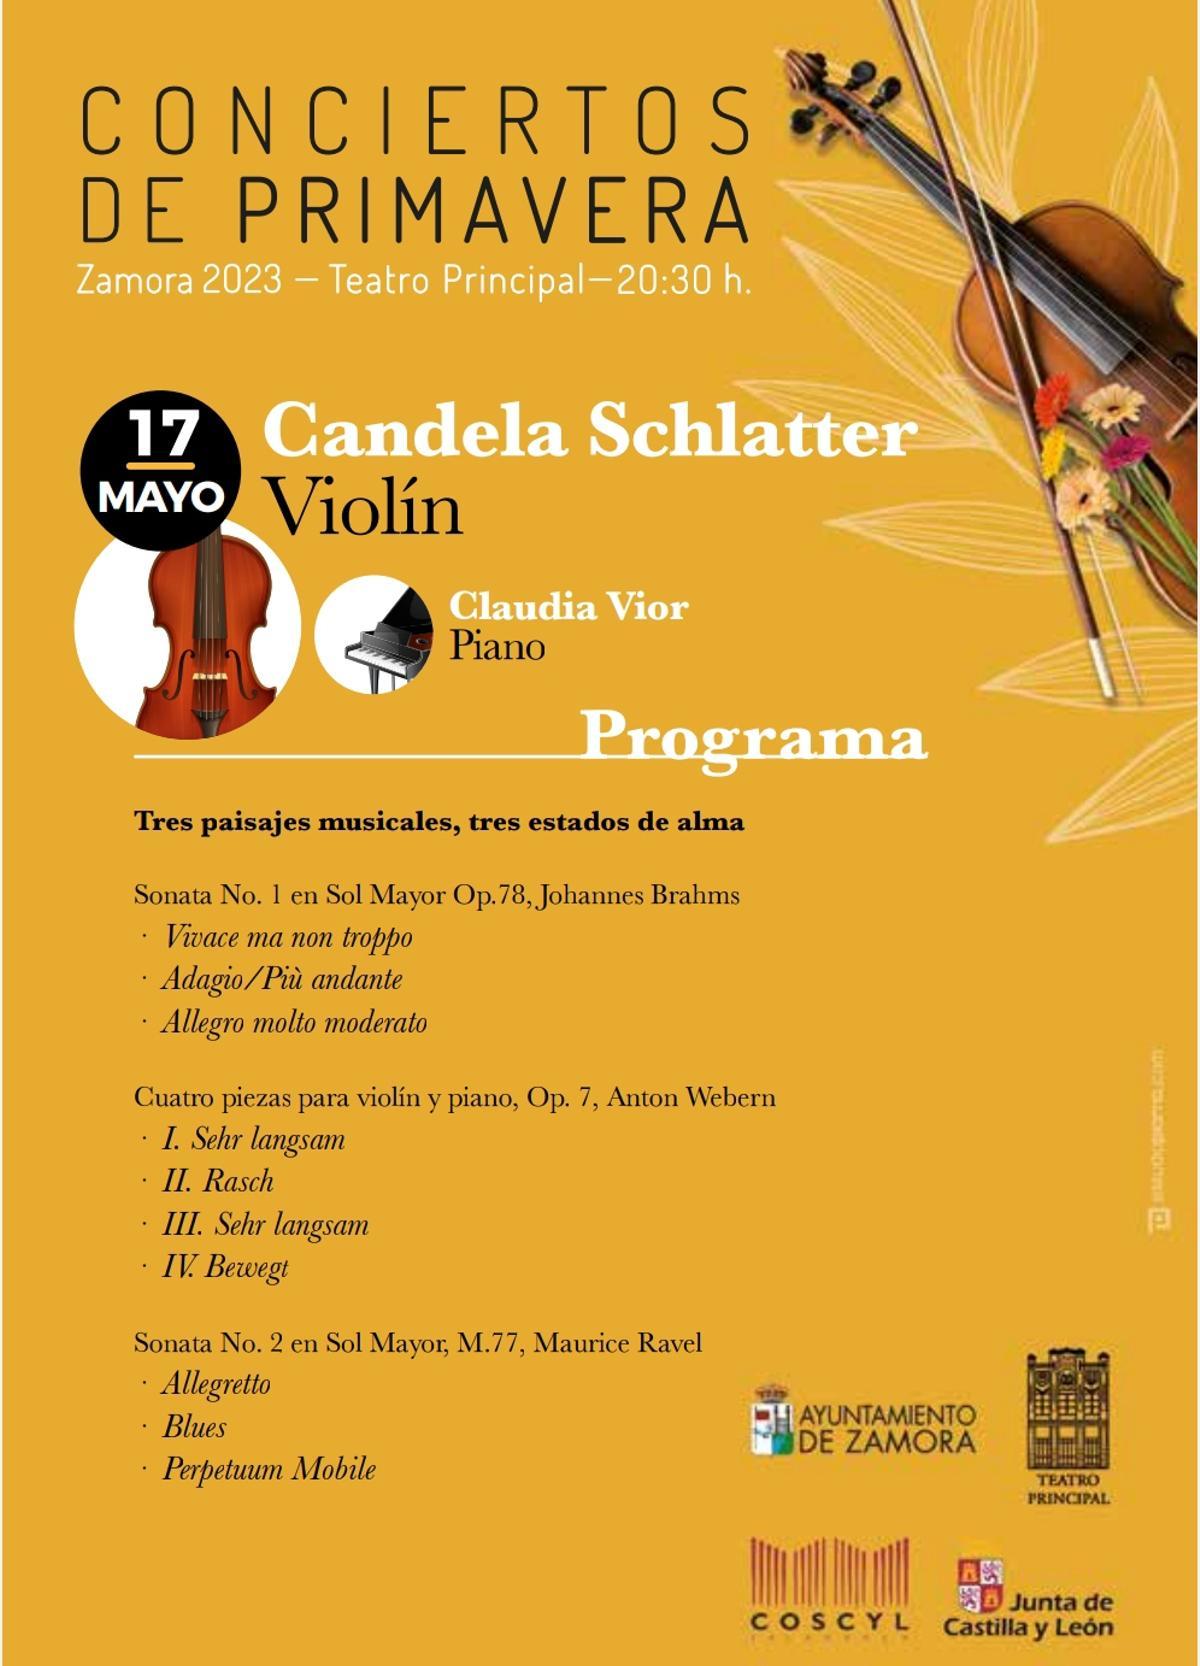 Programa del concierto de Candela Shlatter.